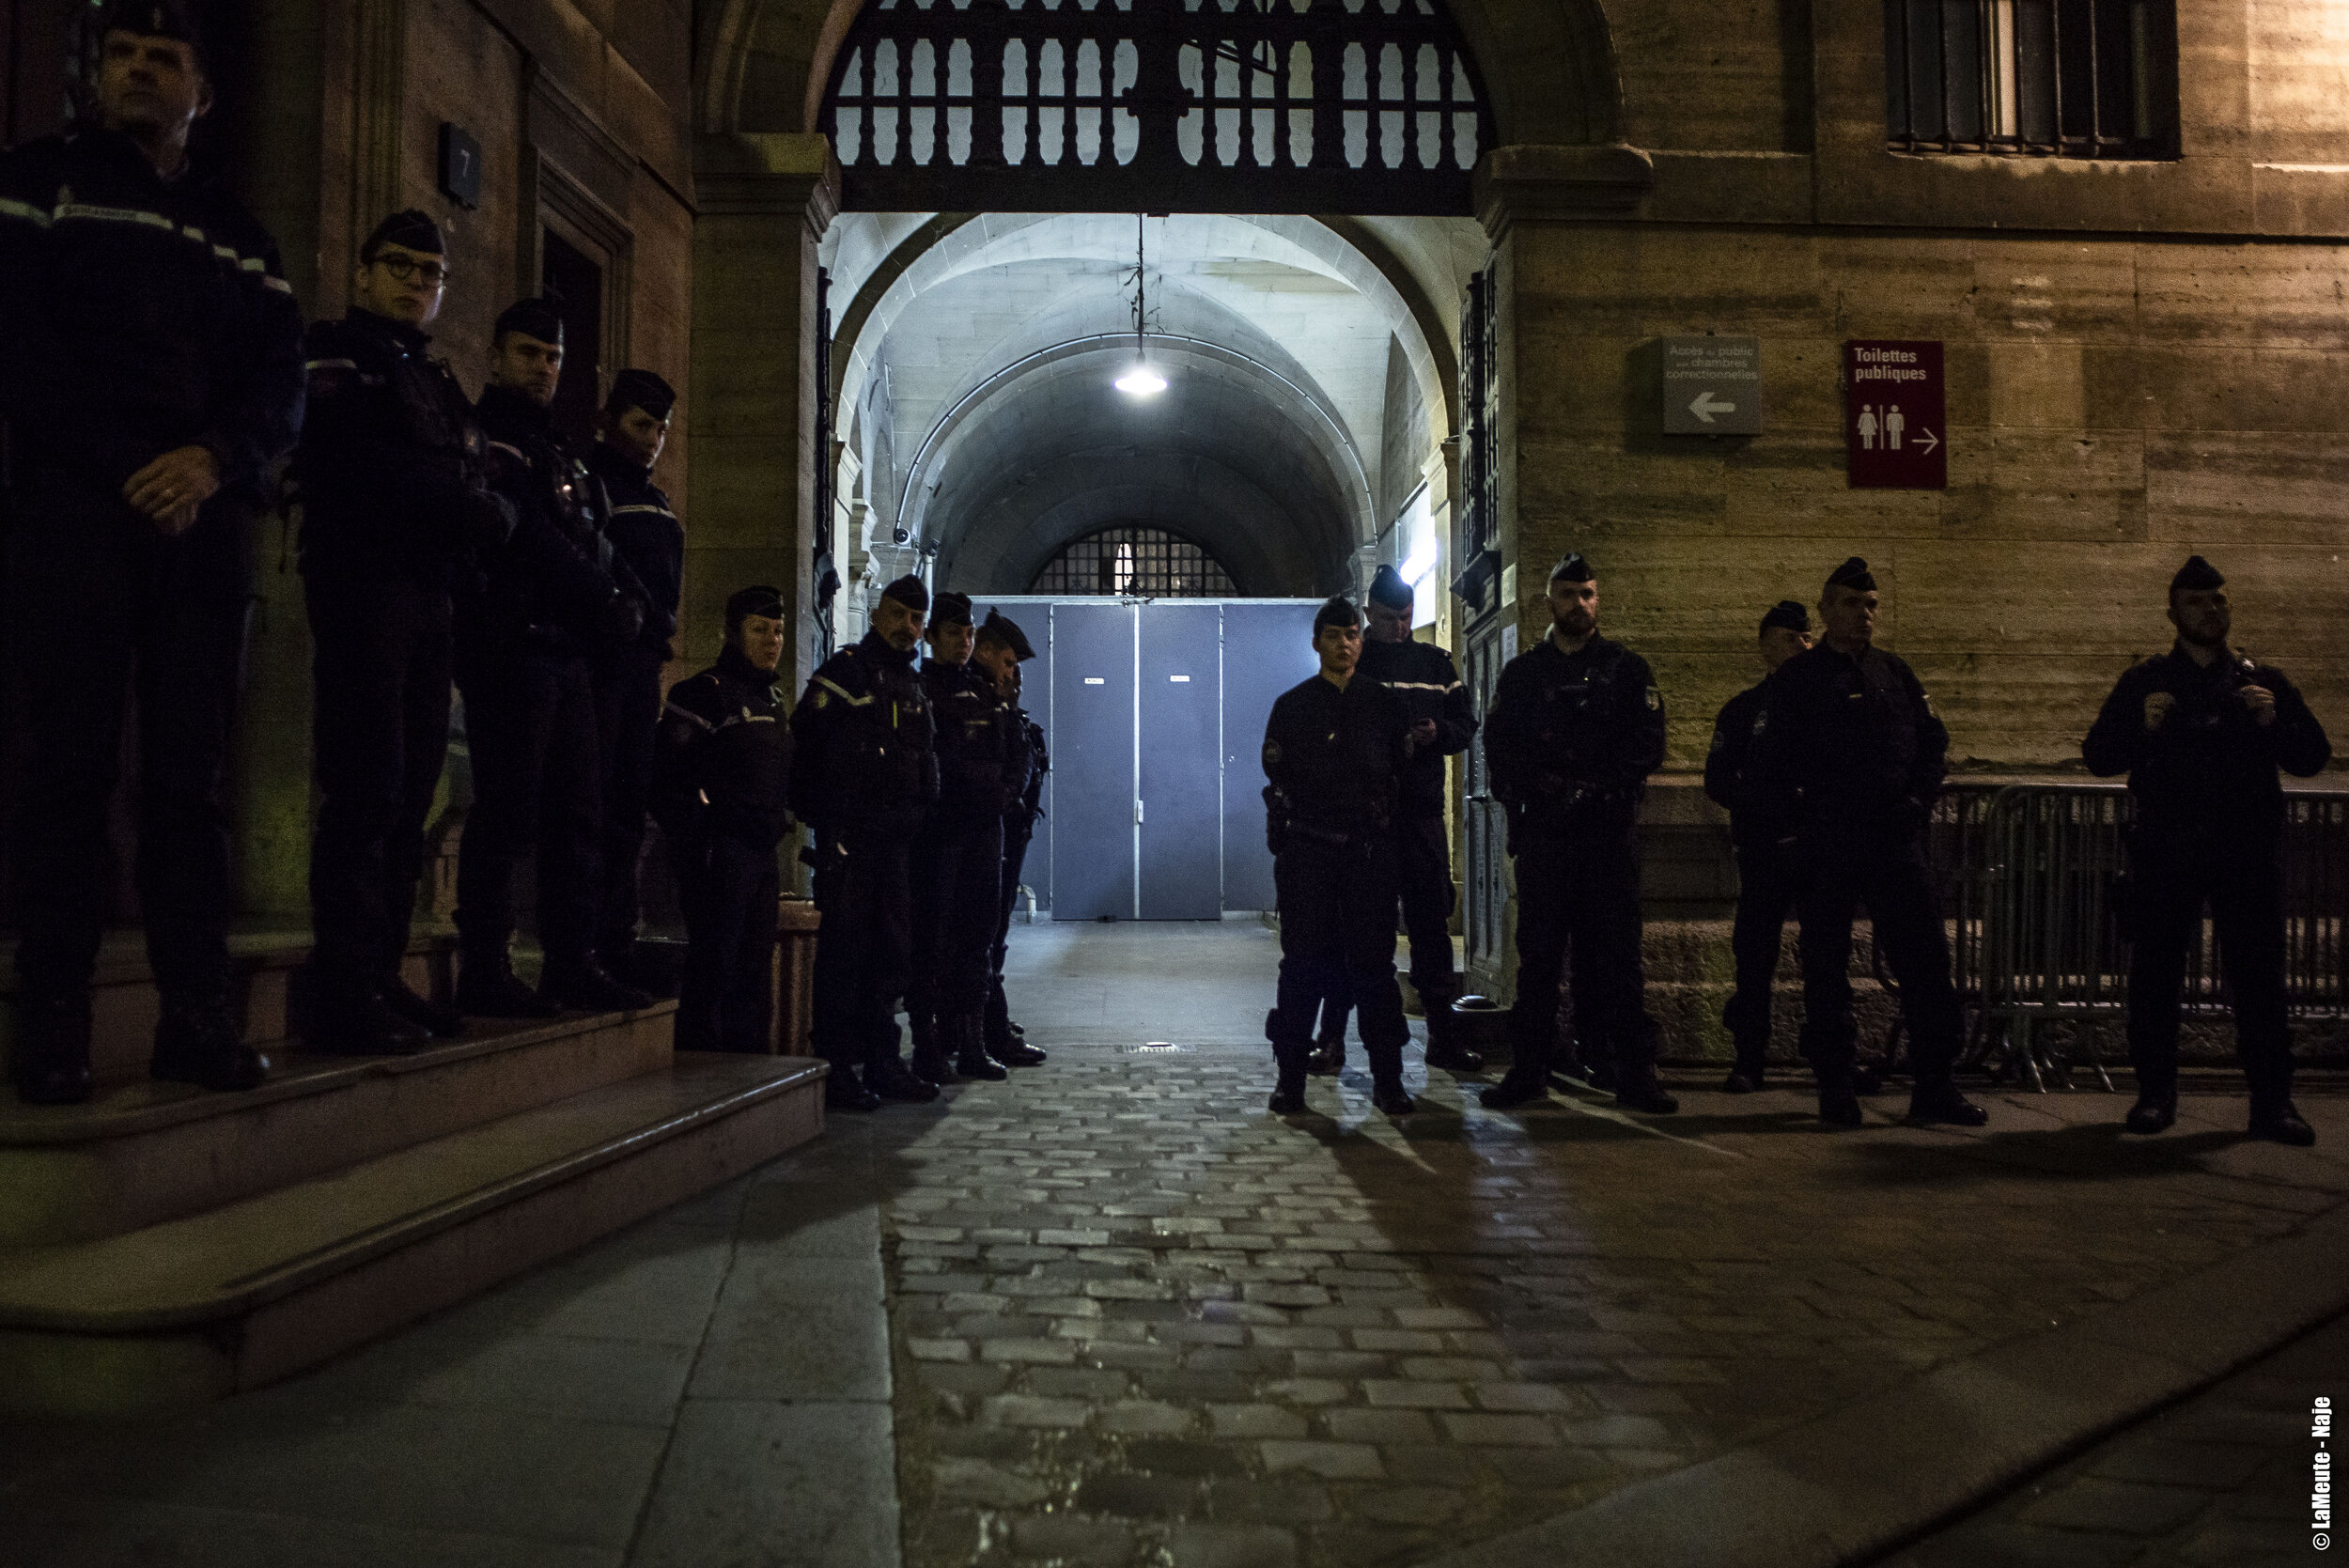   Les gendarmes ont été appelé en nombre pour encadrer la famille Kebe, parties civiles, et ses soutiens jusqu’à la sortie du palais de justice de Paris.  ©LaMeute-Naje 